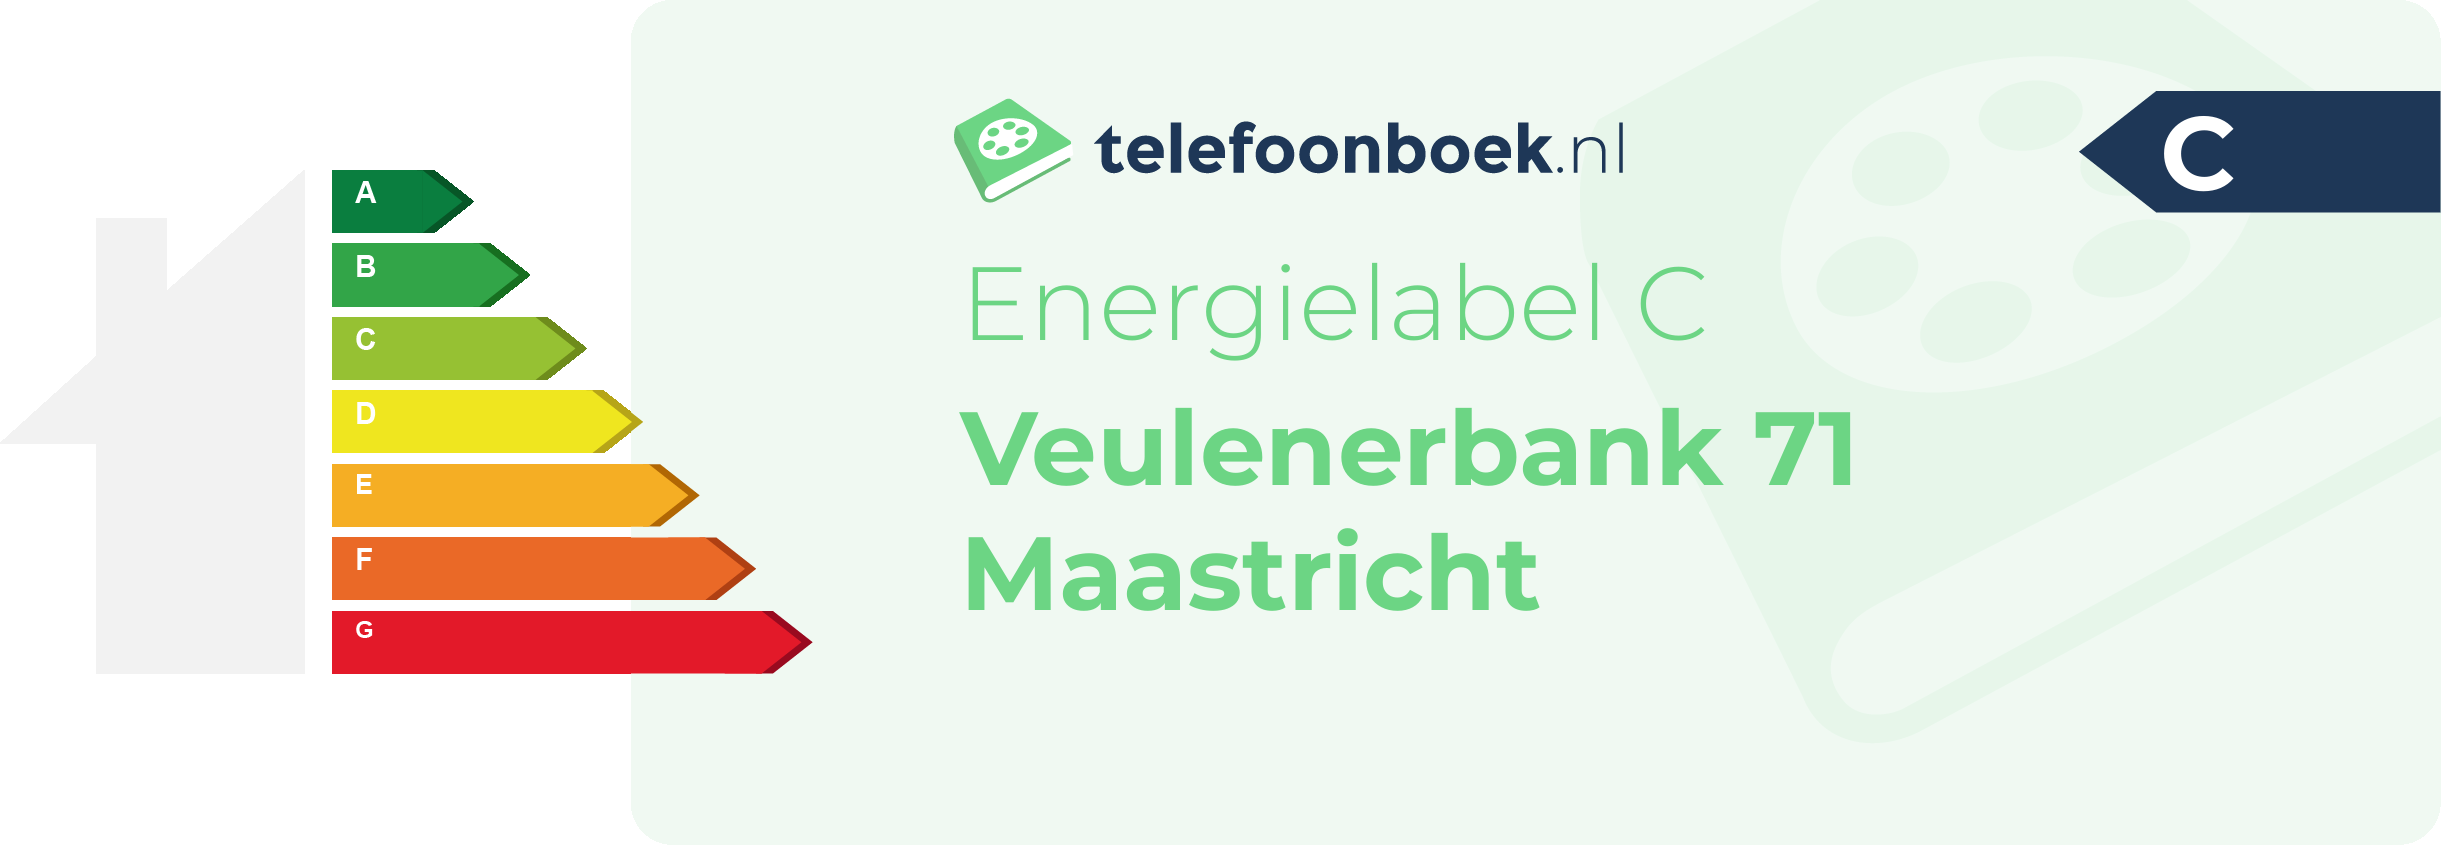 Energielabel Veulenerbank 71 Maastricht